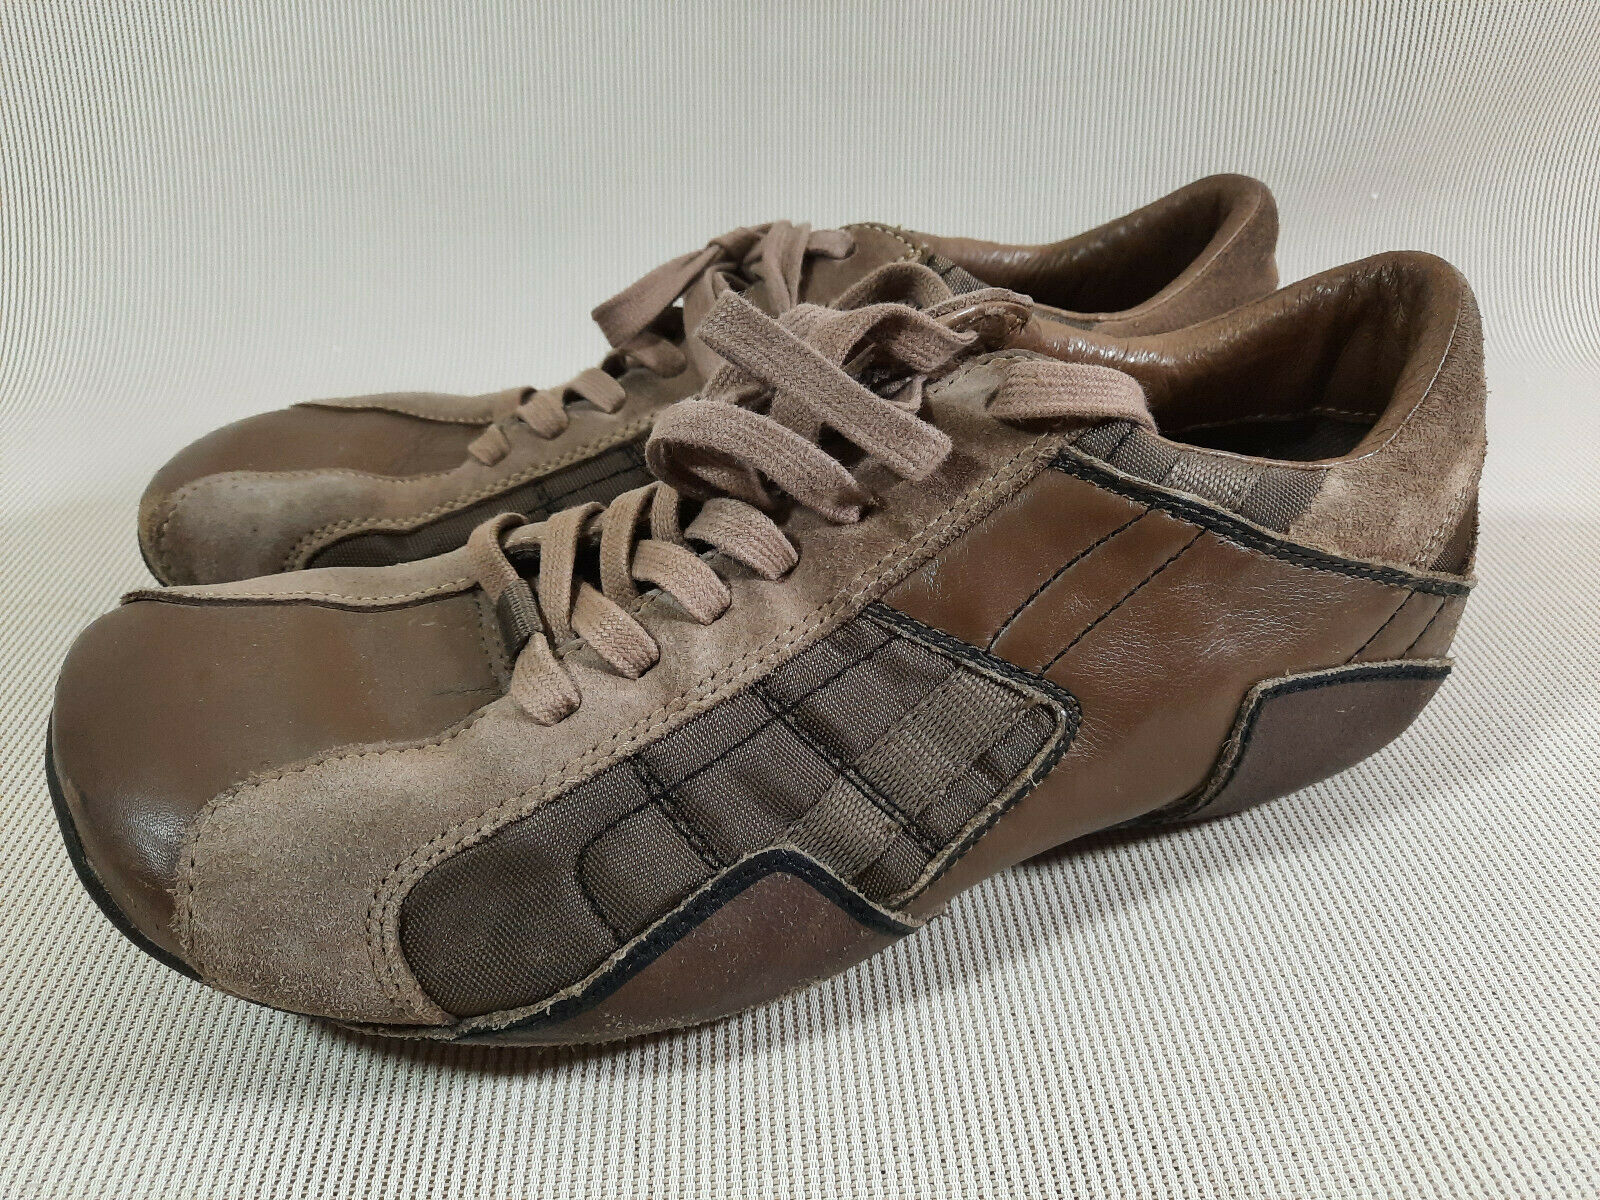 Diesel Footwear Auriga F4-06-ST Brown Leather Shoes Sneakers Men's Size 10